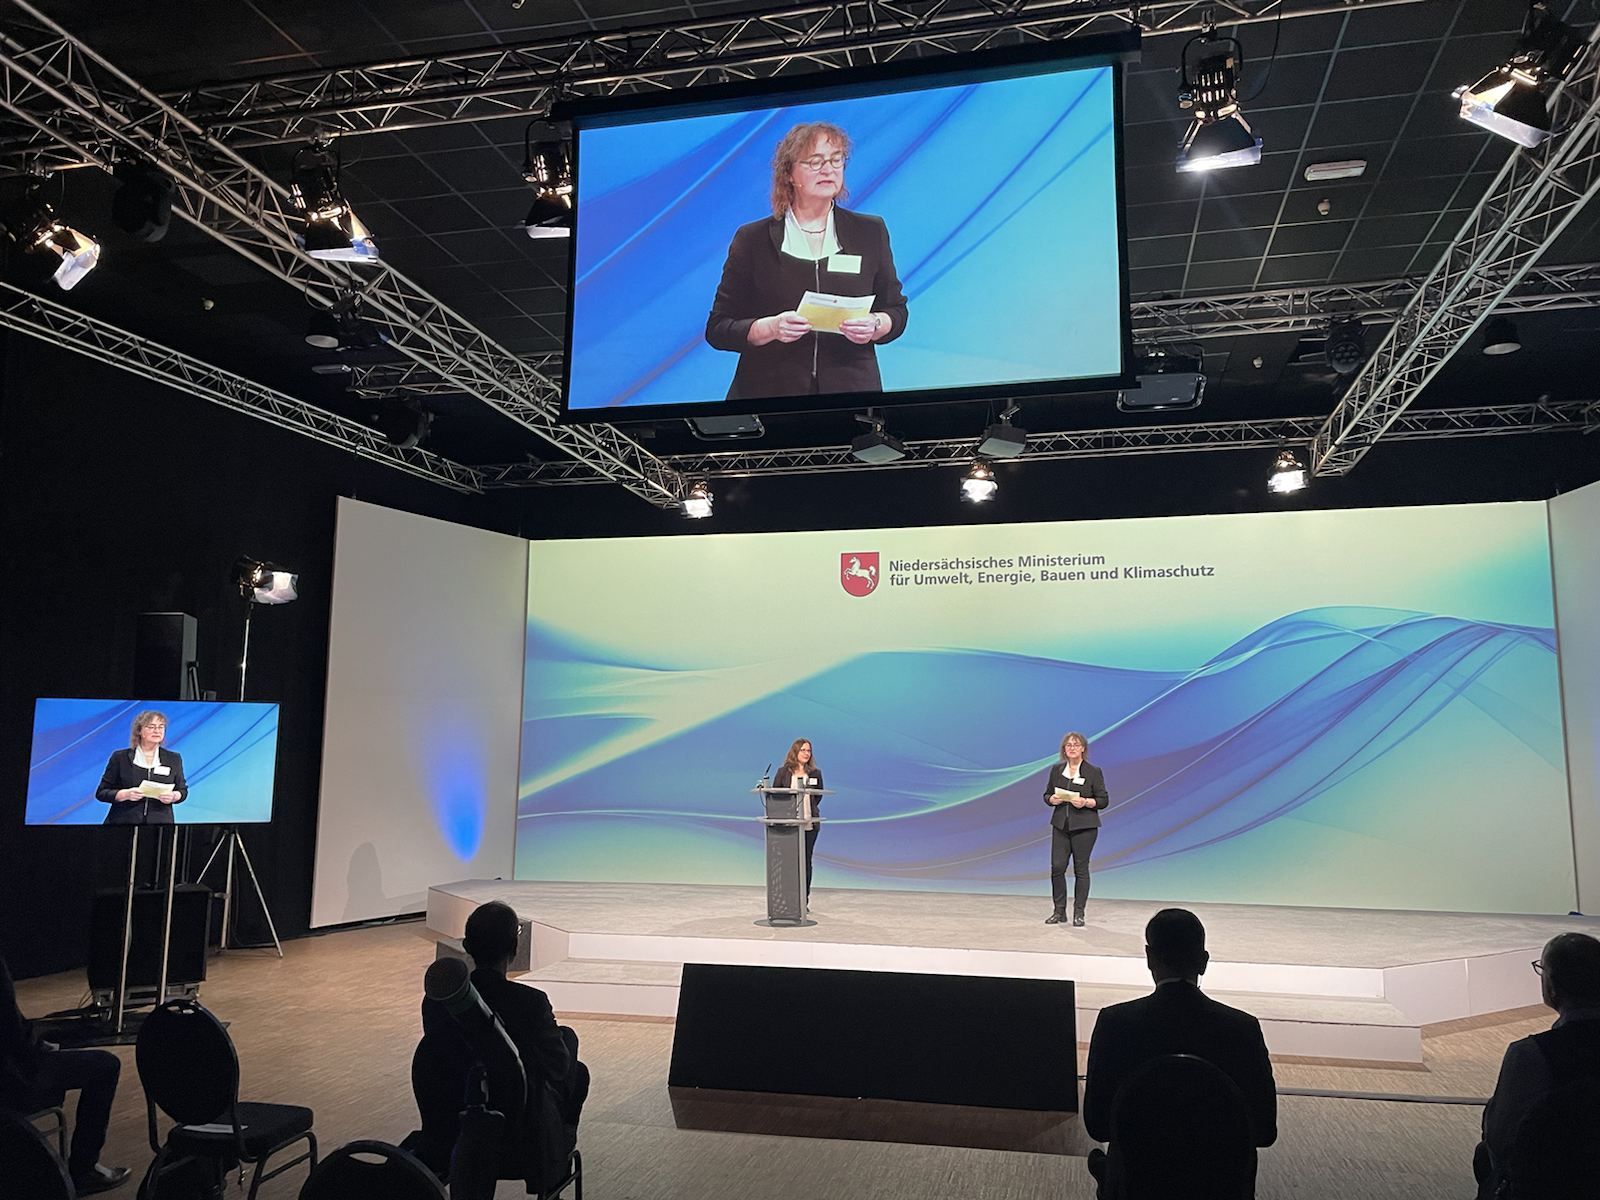 Cornelia Scupin spricht auf einer Bühne, im Hintergrund ist das Logo des Umweltministerium zu sehen